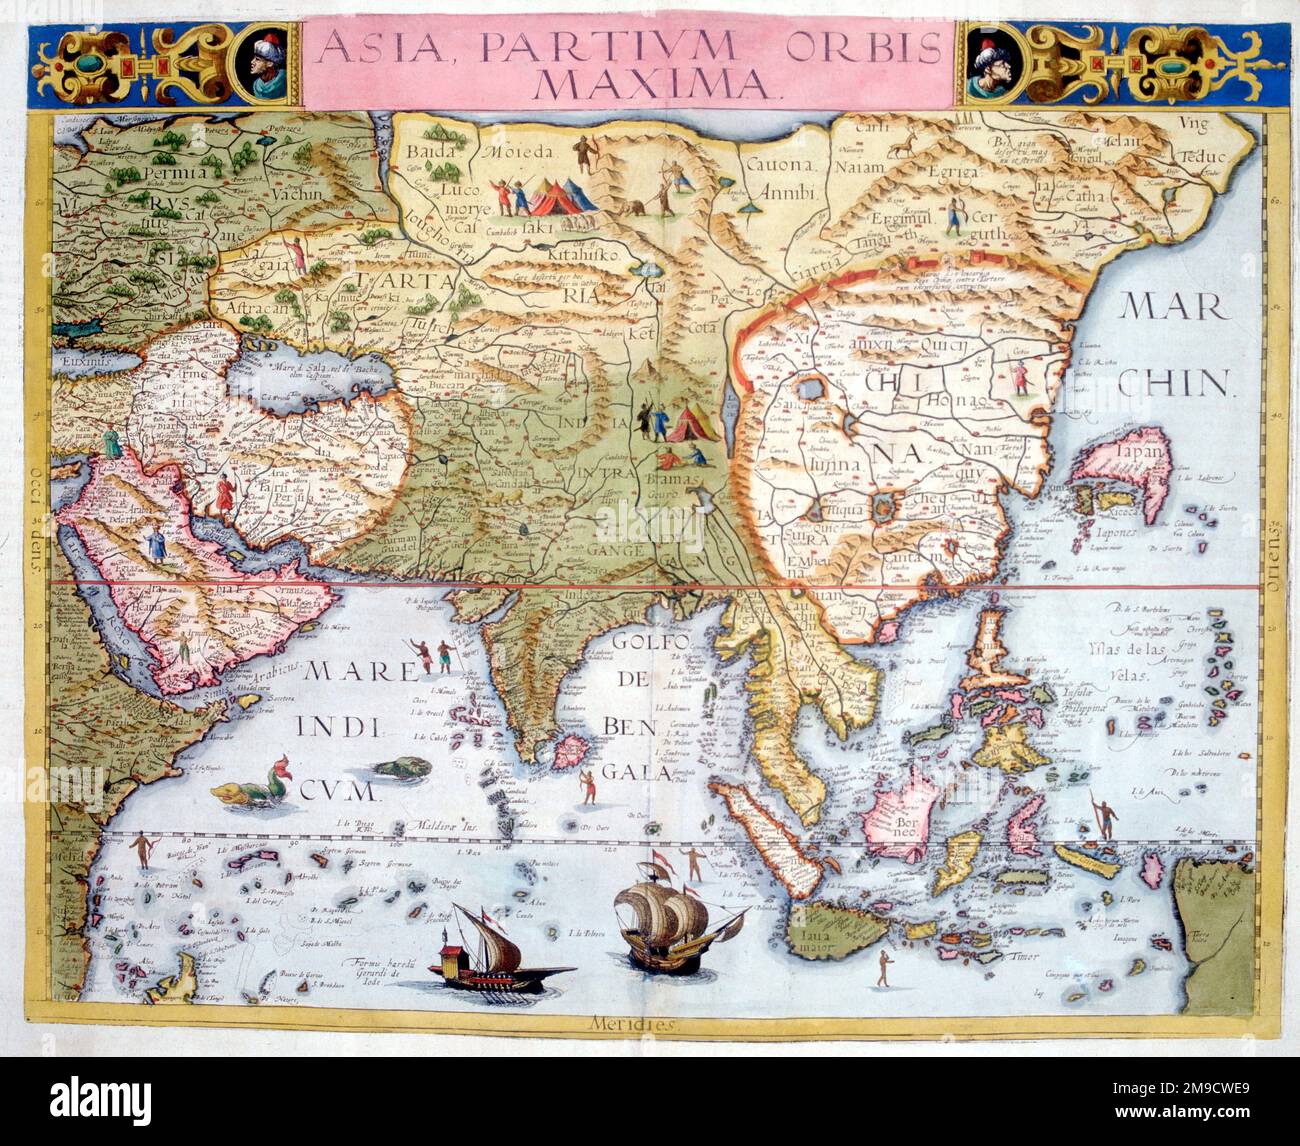 !6th century Map - Asia Partium Orbis Maxima Stock Photo